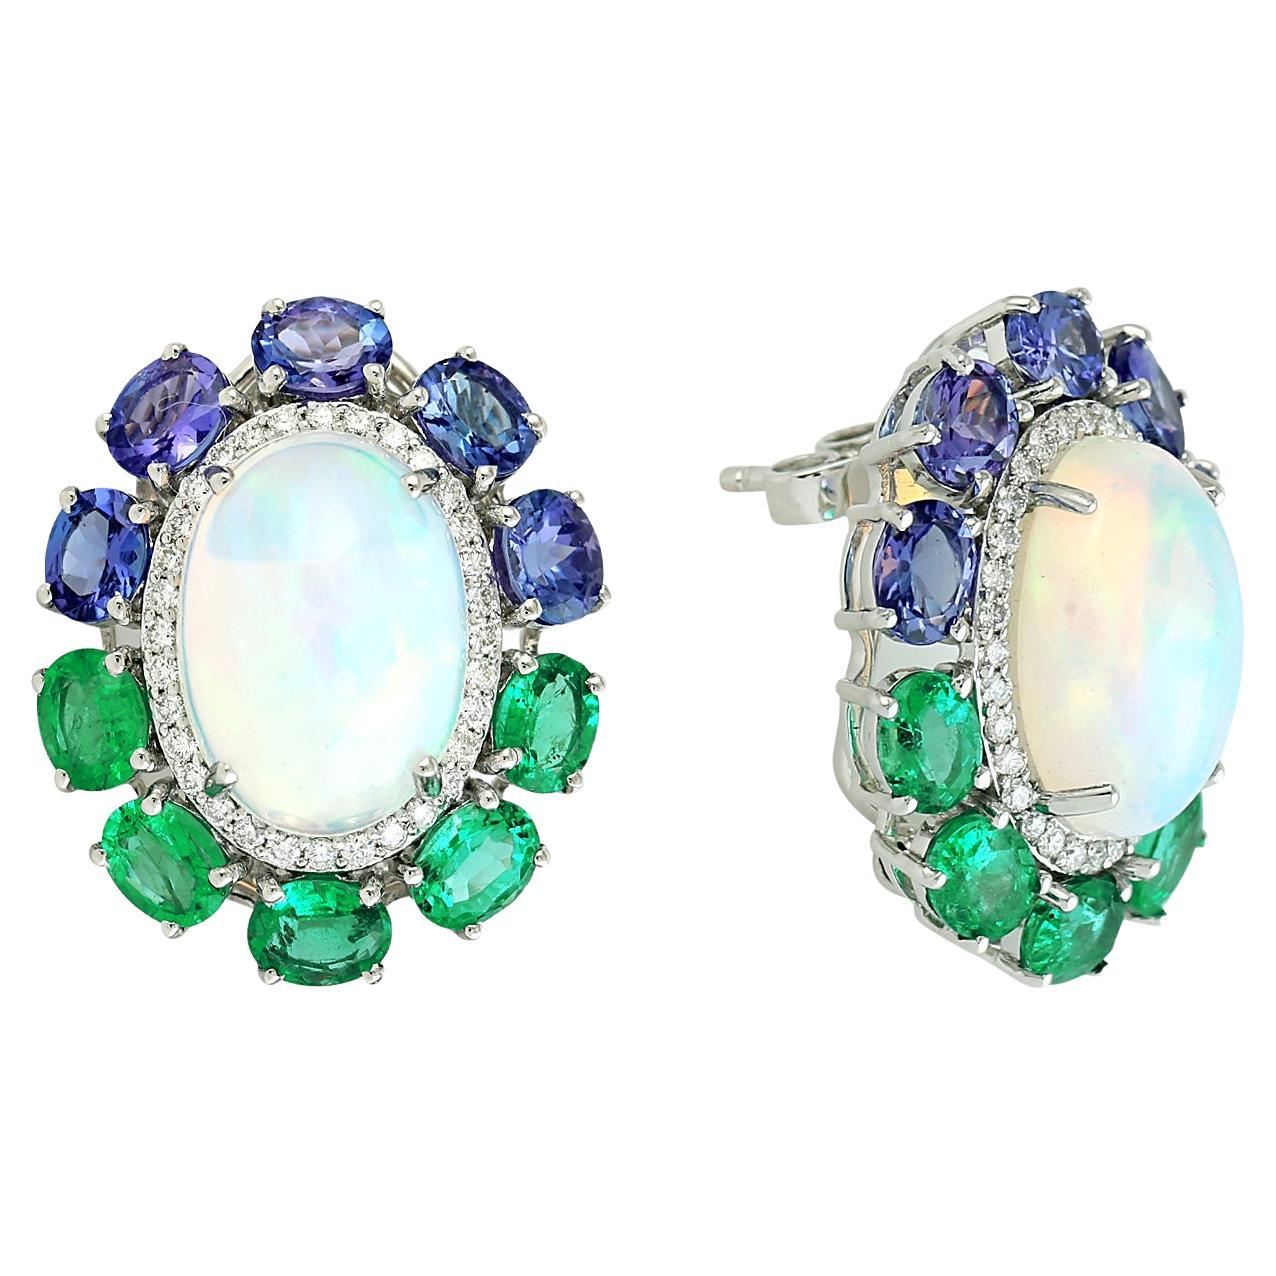 Multi Gemstone Earrings With Opal & Diamonds Made In 18k Gold